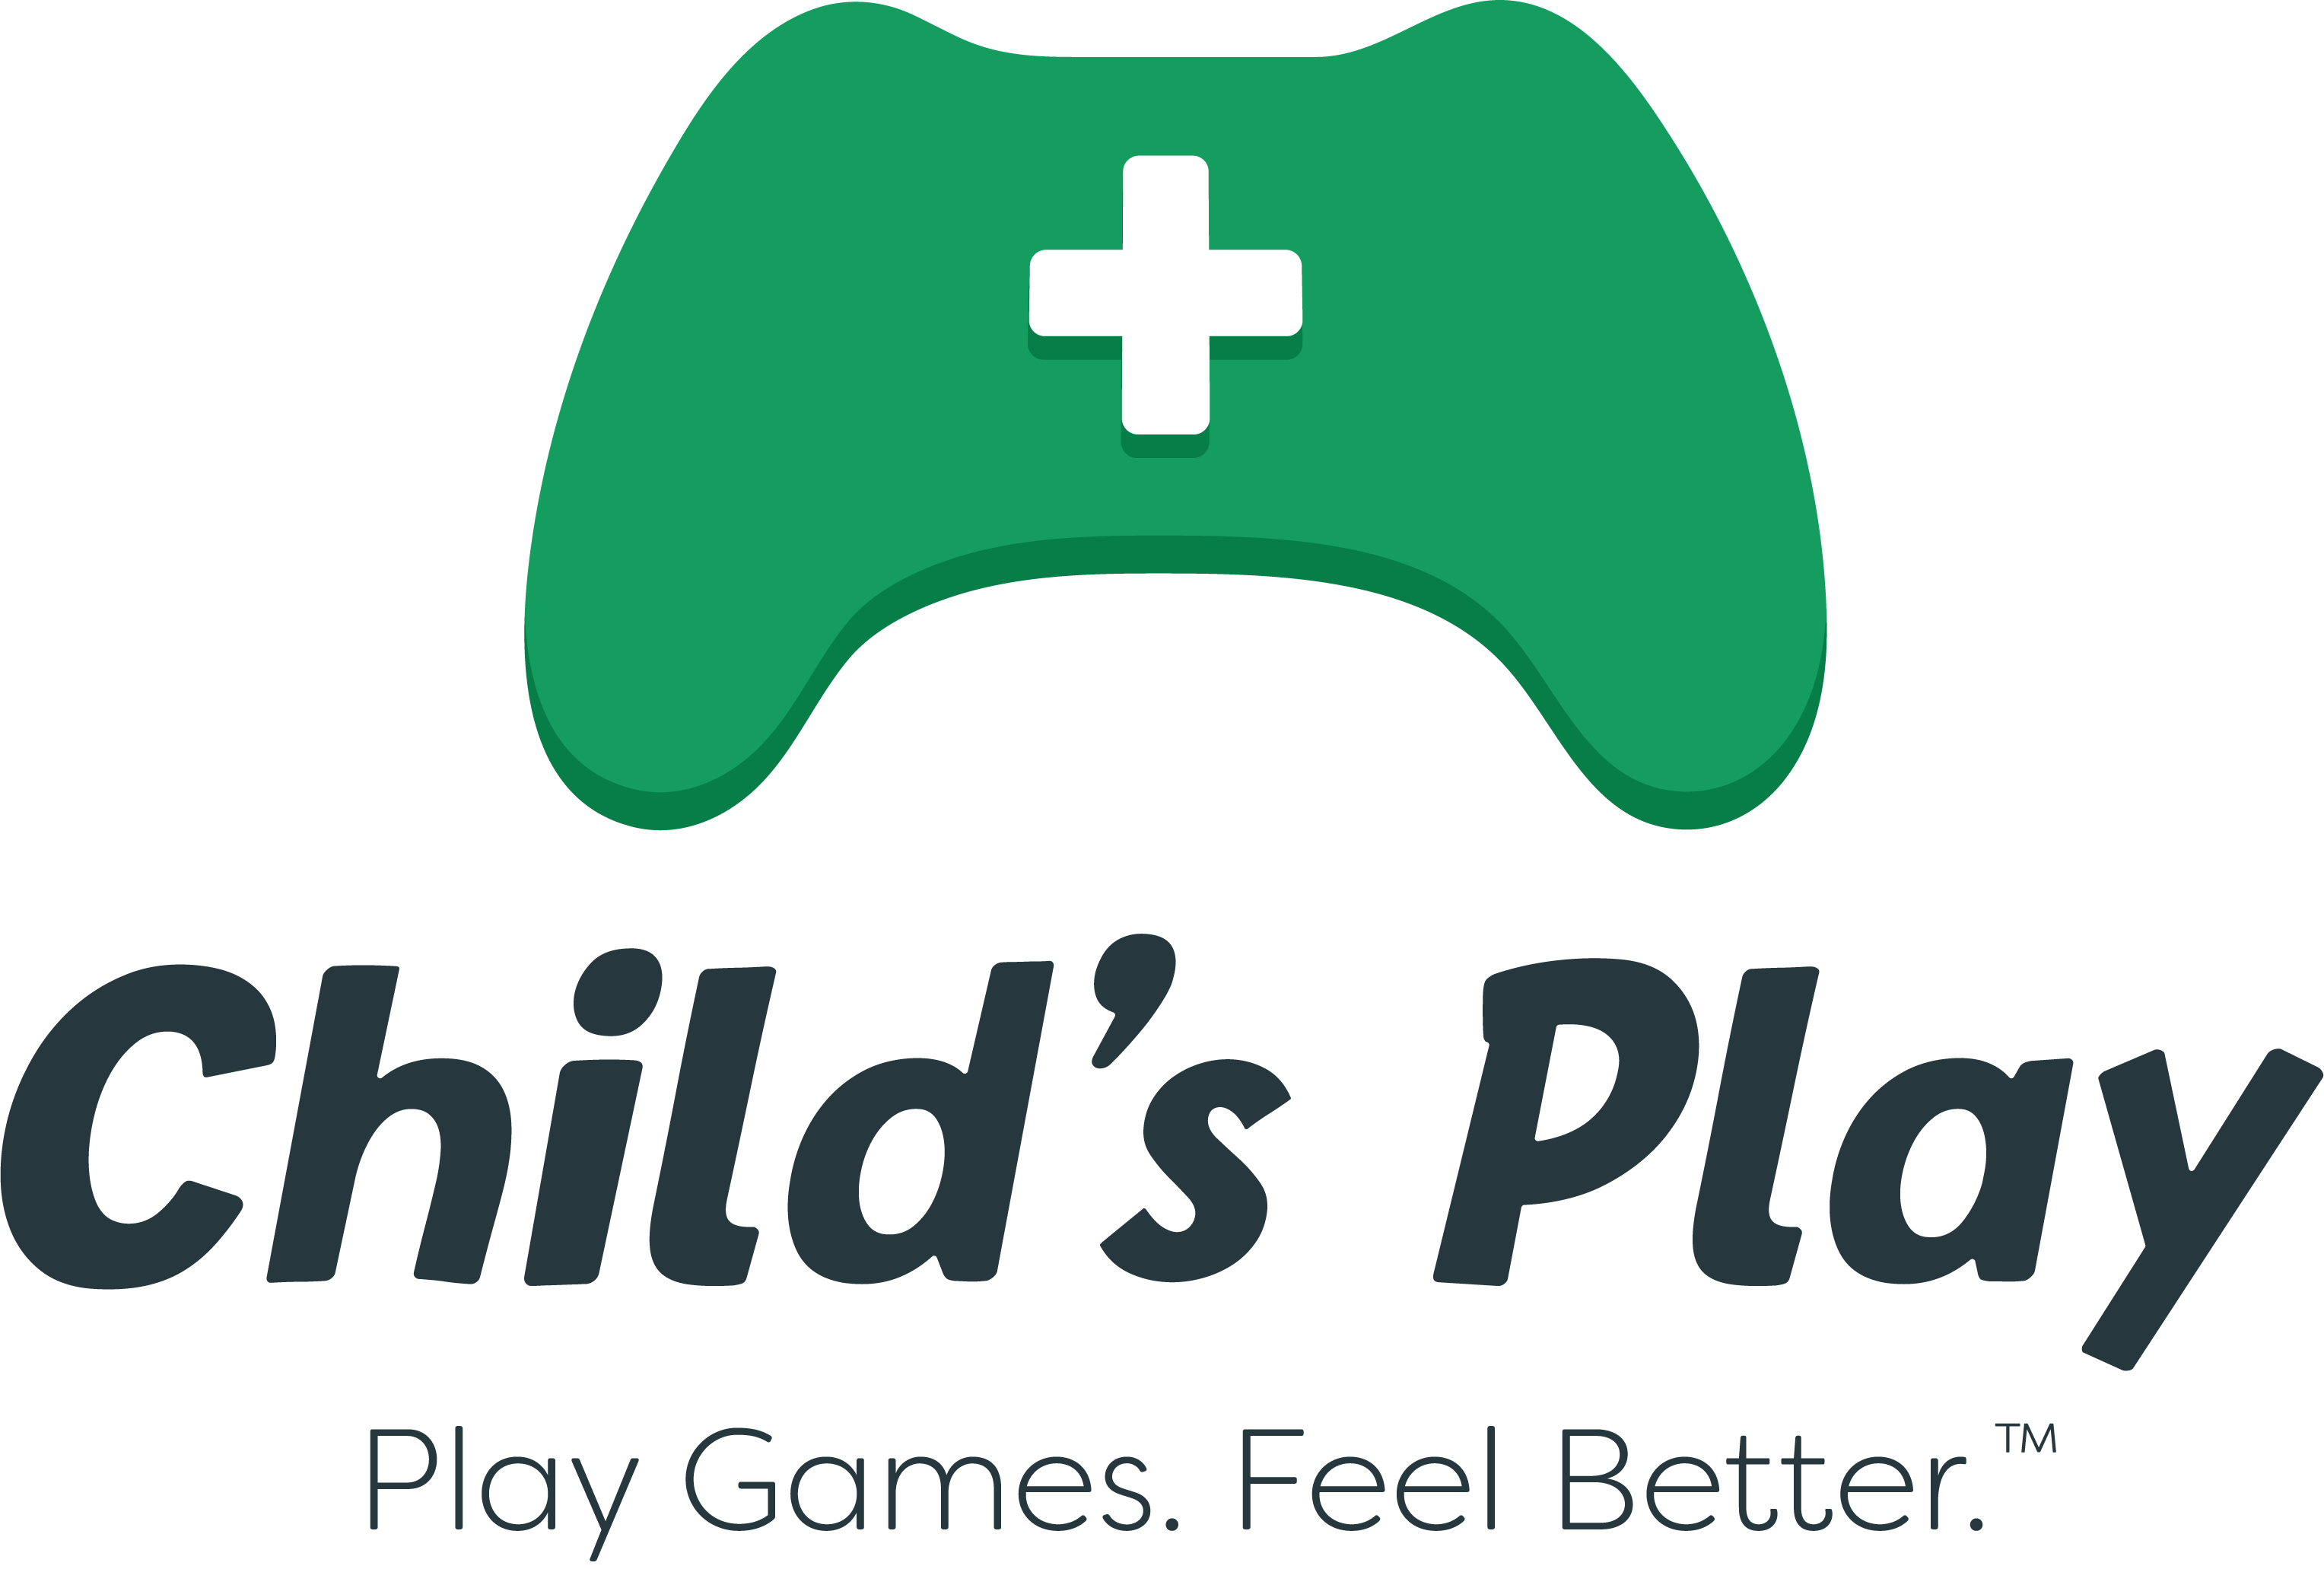 Child's Play – Wikipédia, a enciclopédia livre